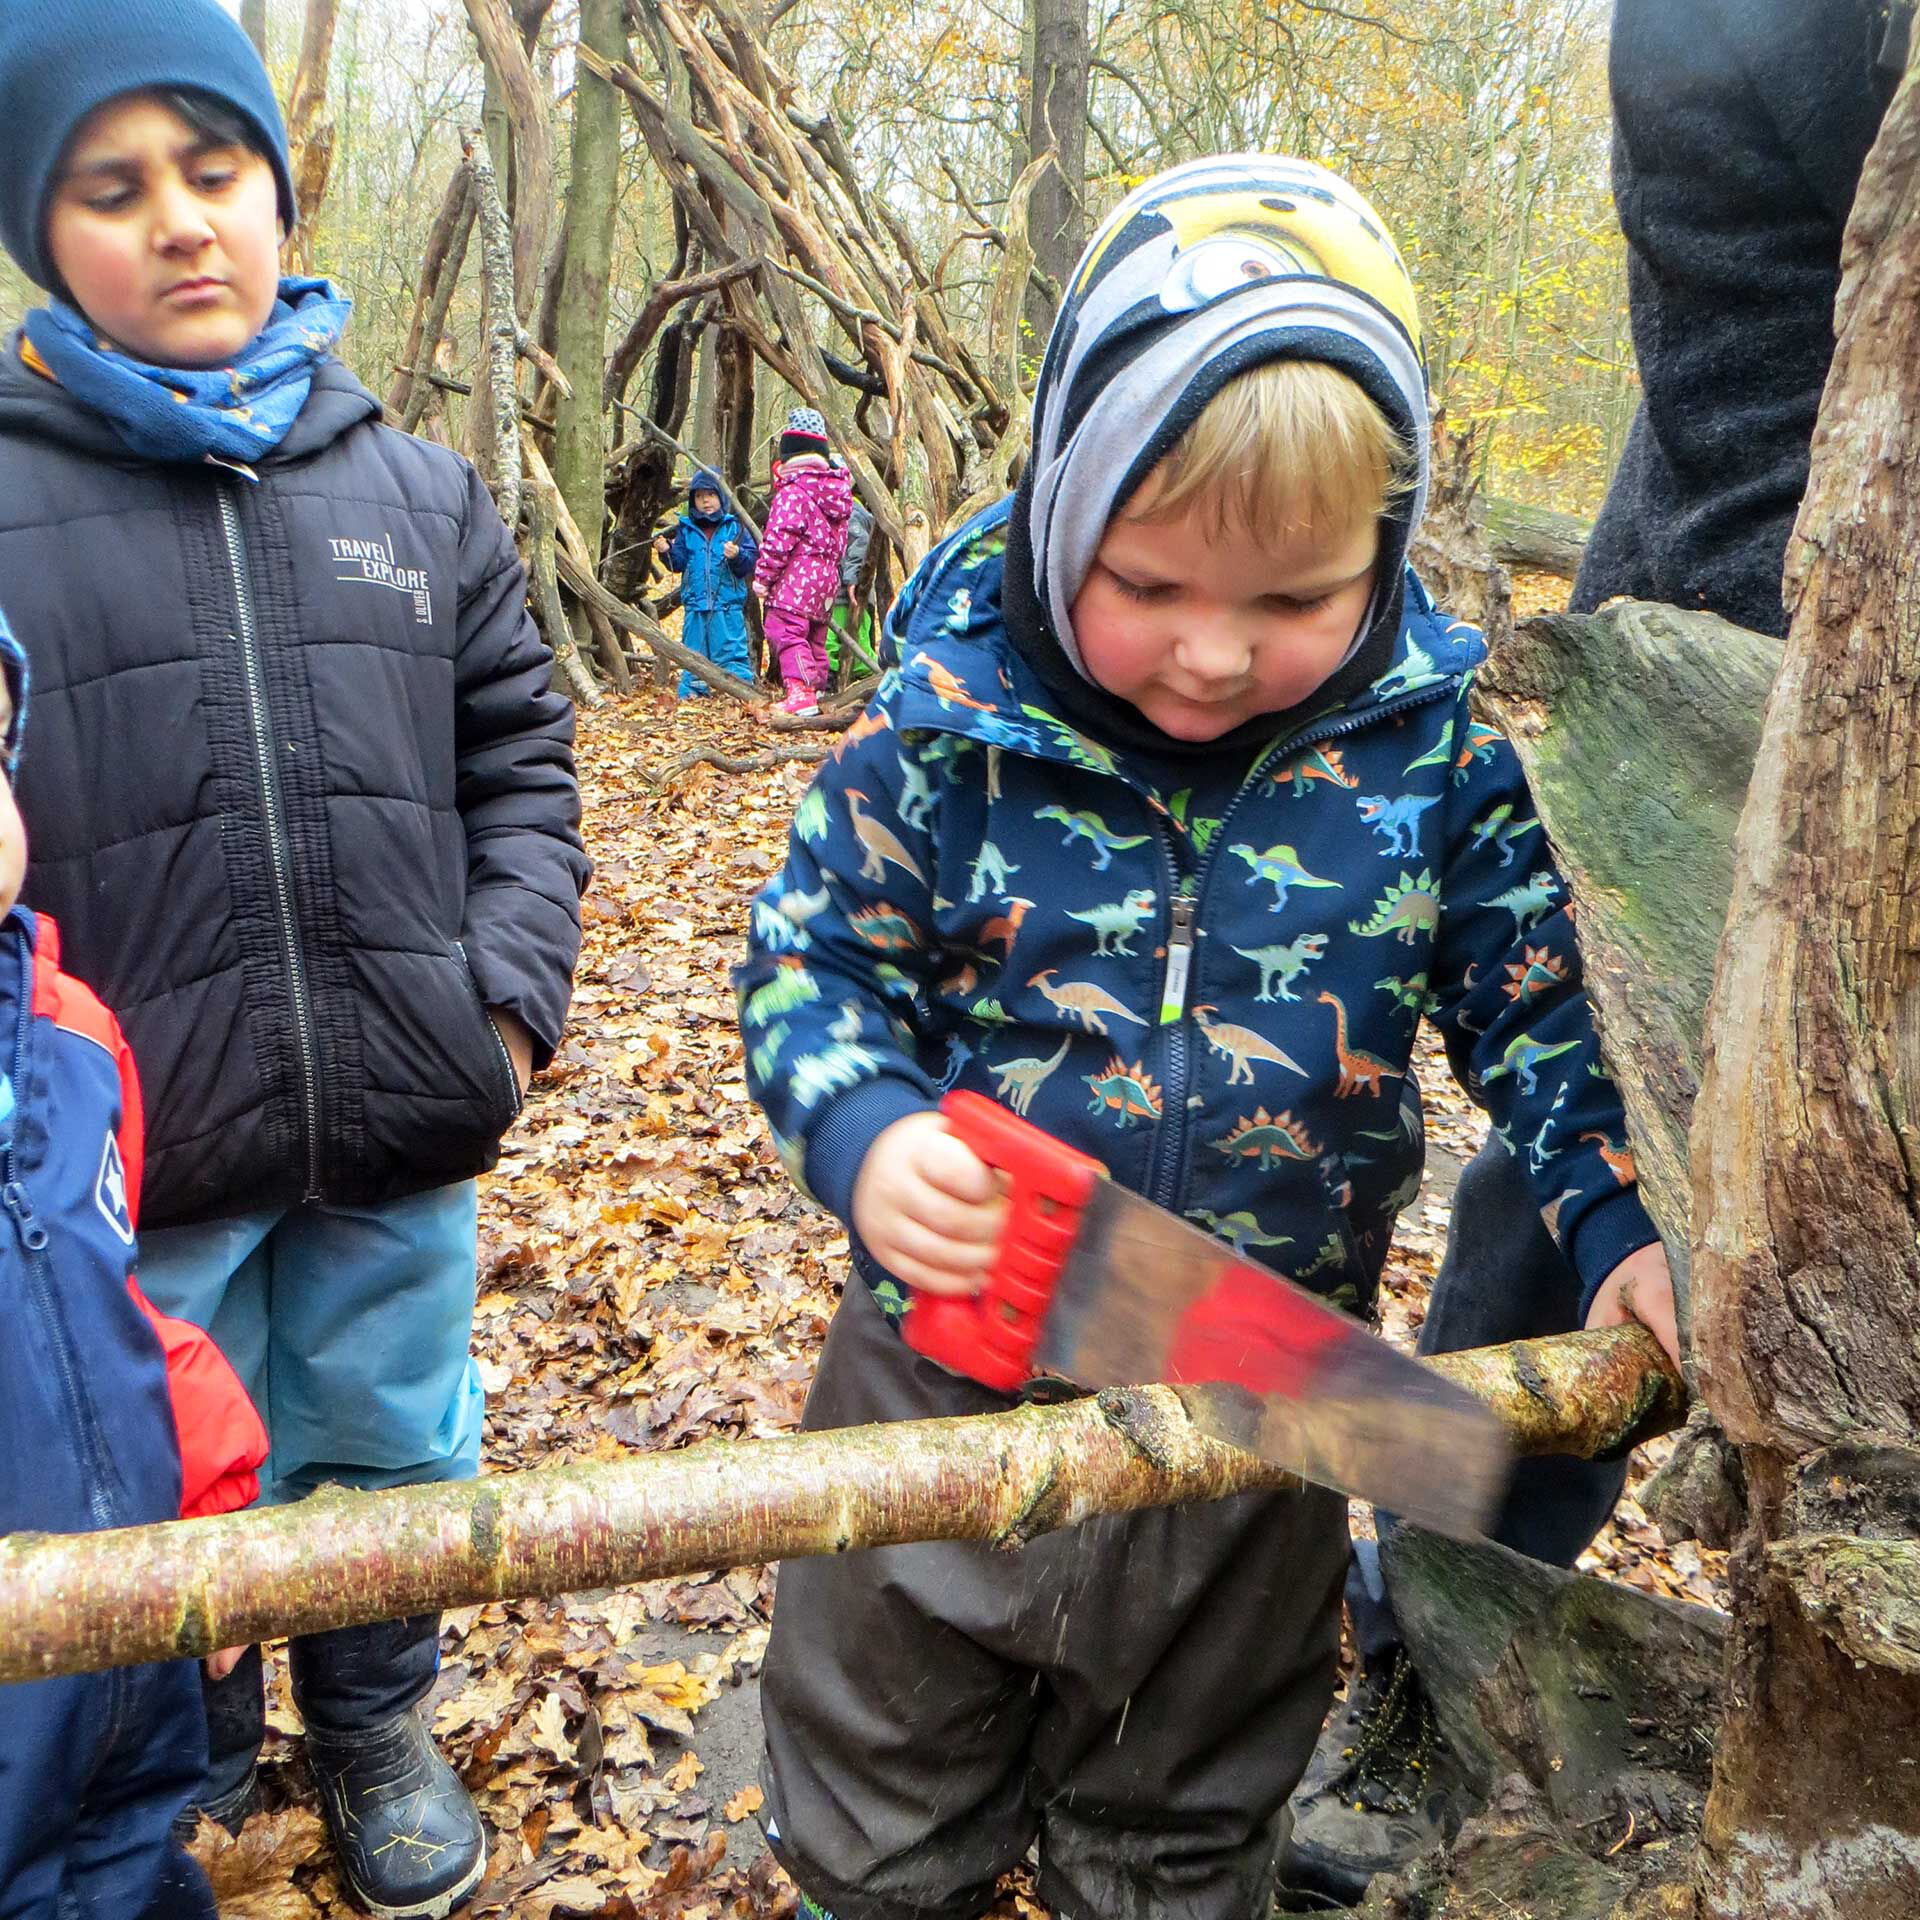 Ein Kleinkind bearbeitet mit einer Säge einen Ast im Wald. Im Hintergrund schauen Kinder zu und zwei Kind spielen im Wald.